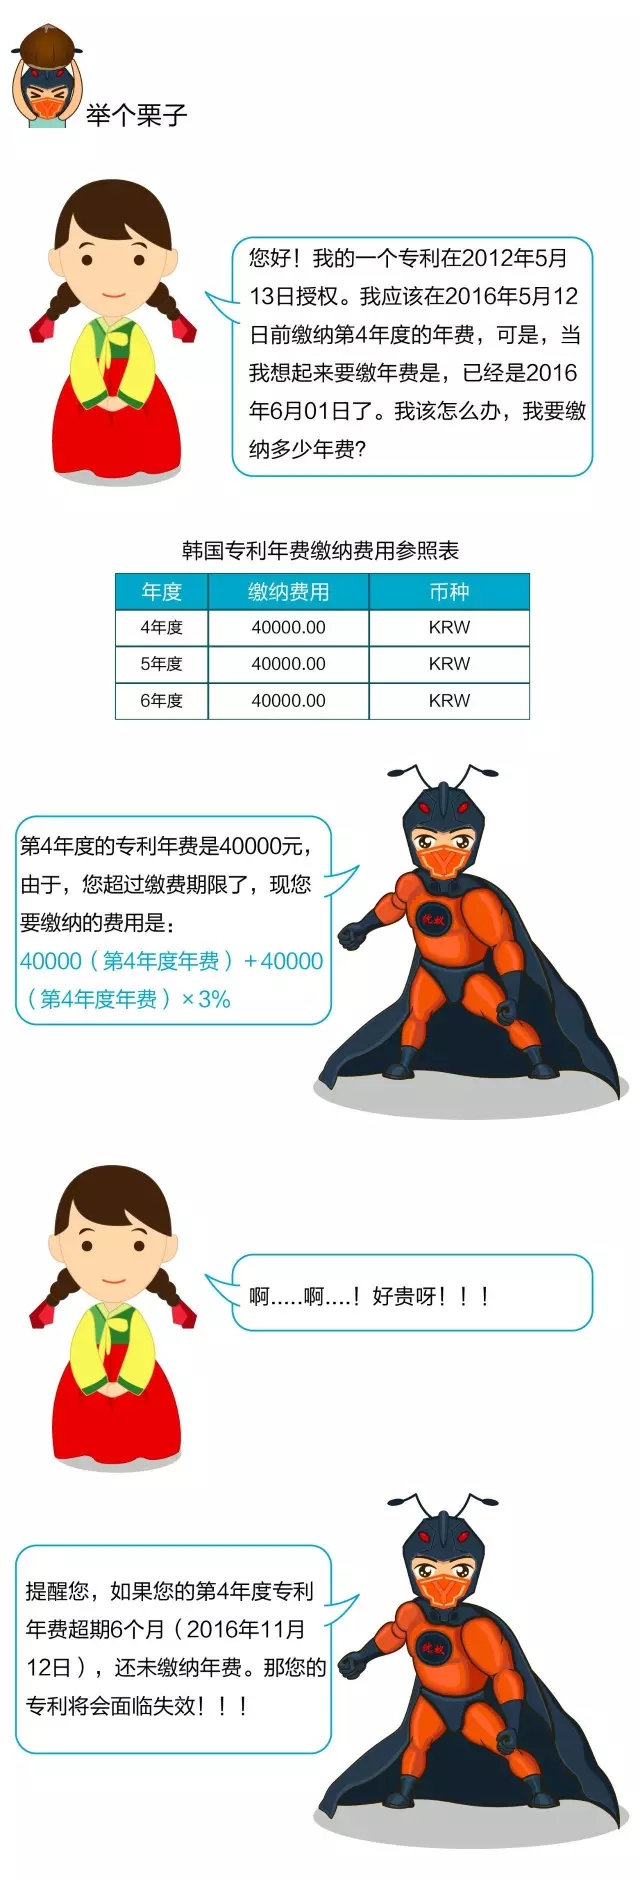 一张图看懂日韩专利年费的滞纳金制度